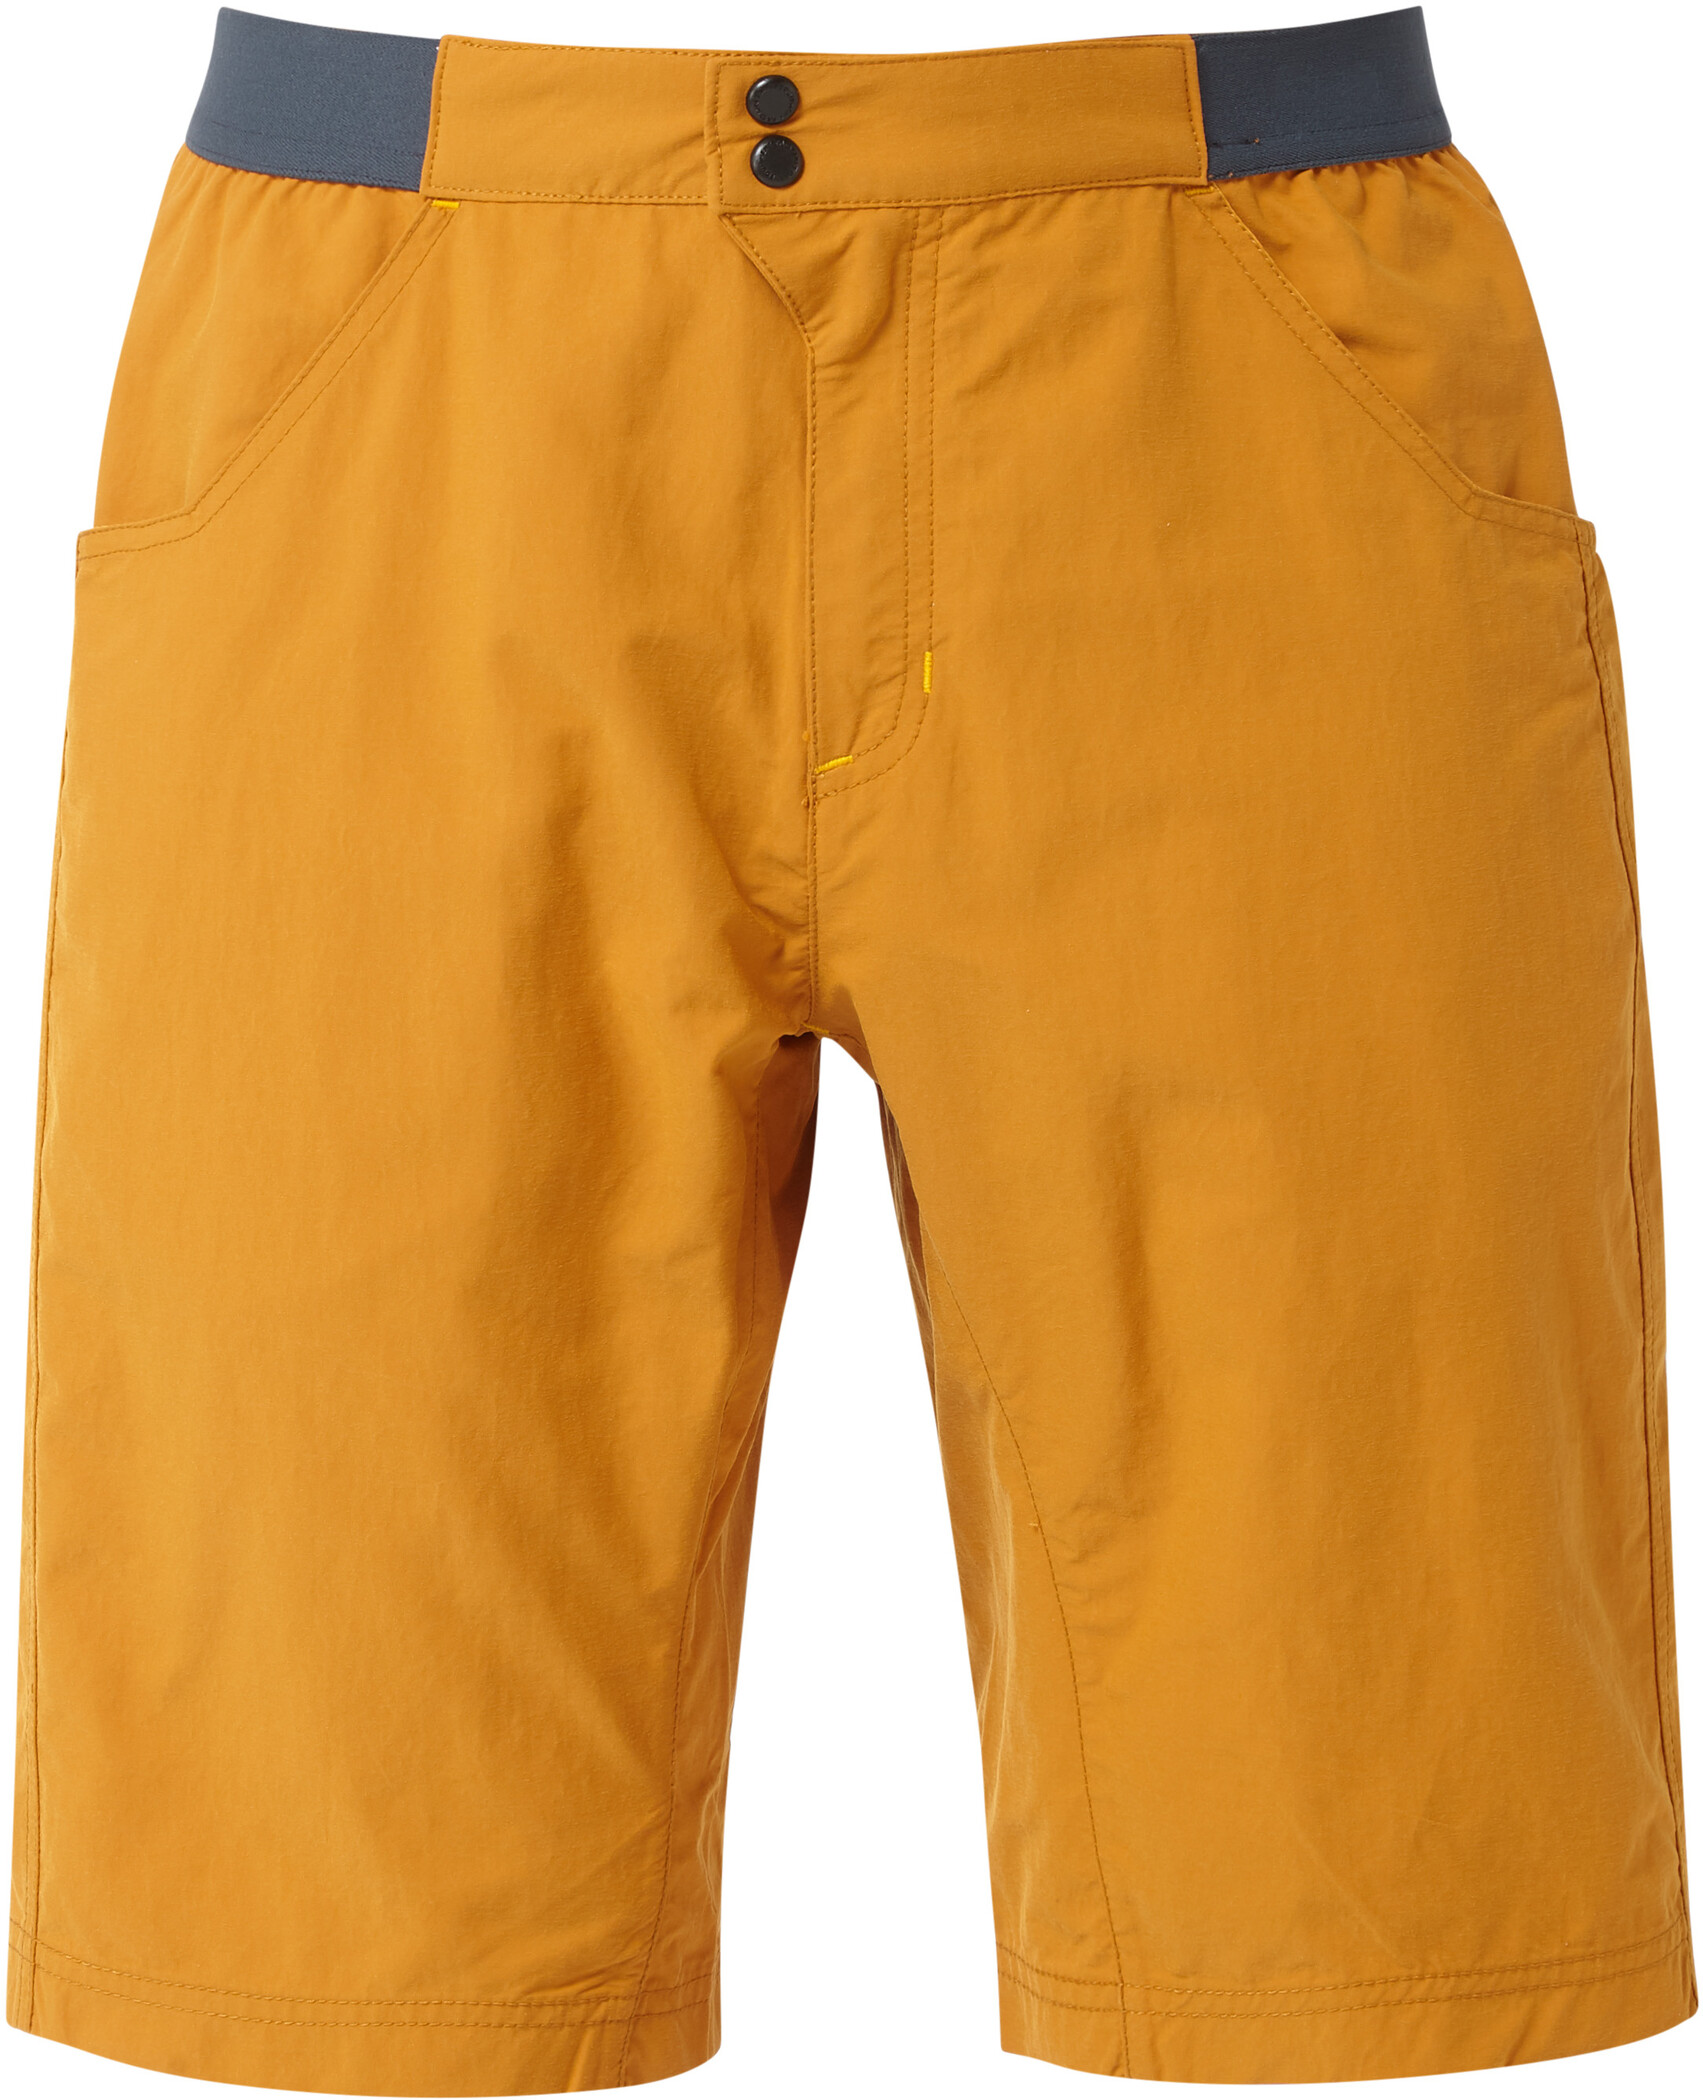 Mountain EquipmentInception Shorts Herren orange